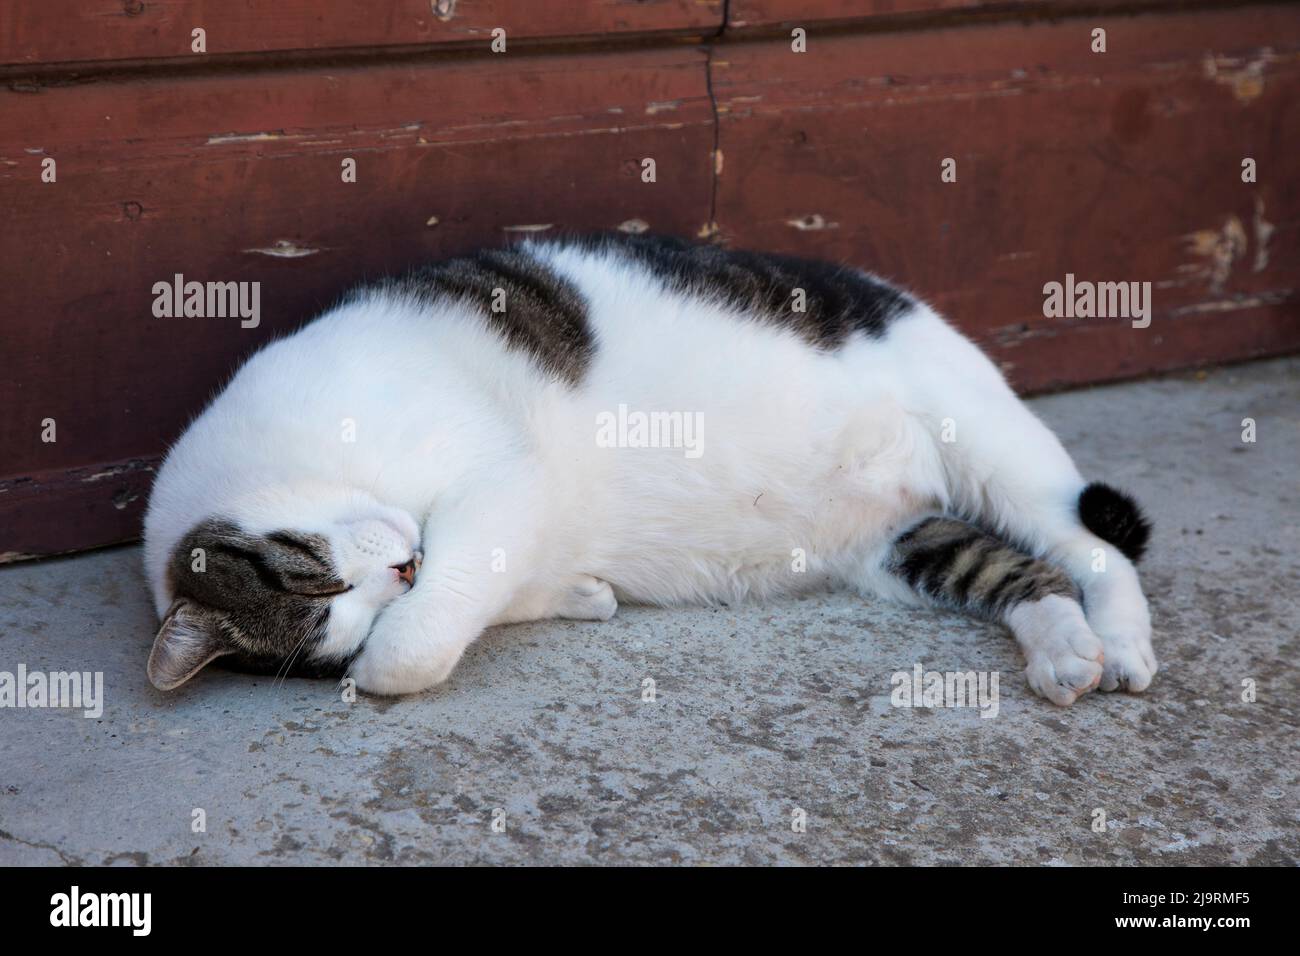 Italy, Tuscany, Crete Senesi, Asciano. Cat sleeping along the streets of Asciano. Stock Photo